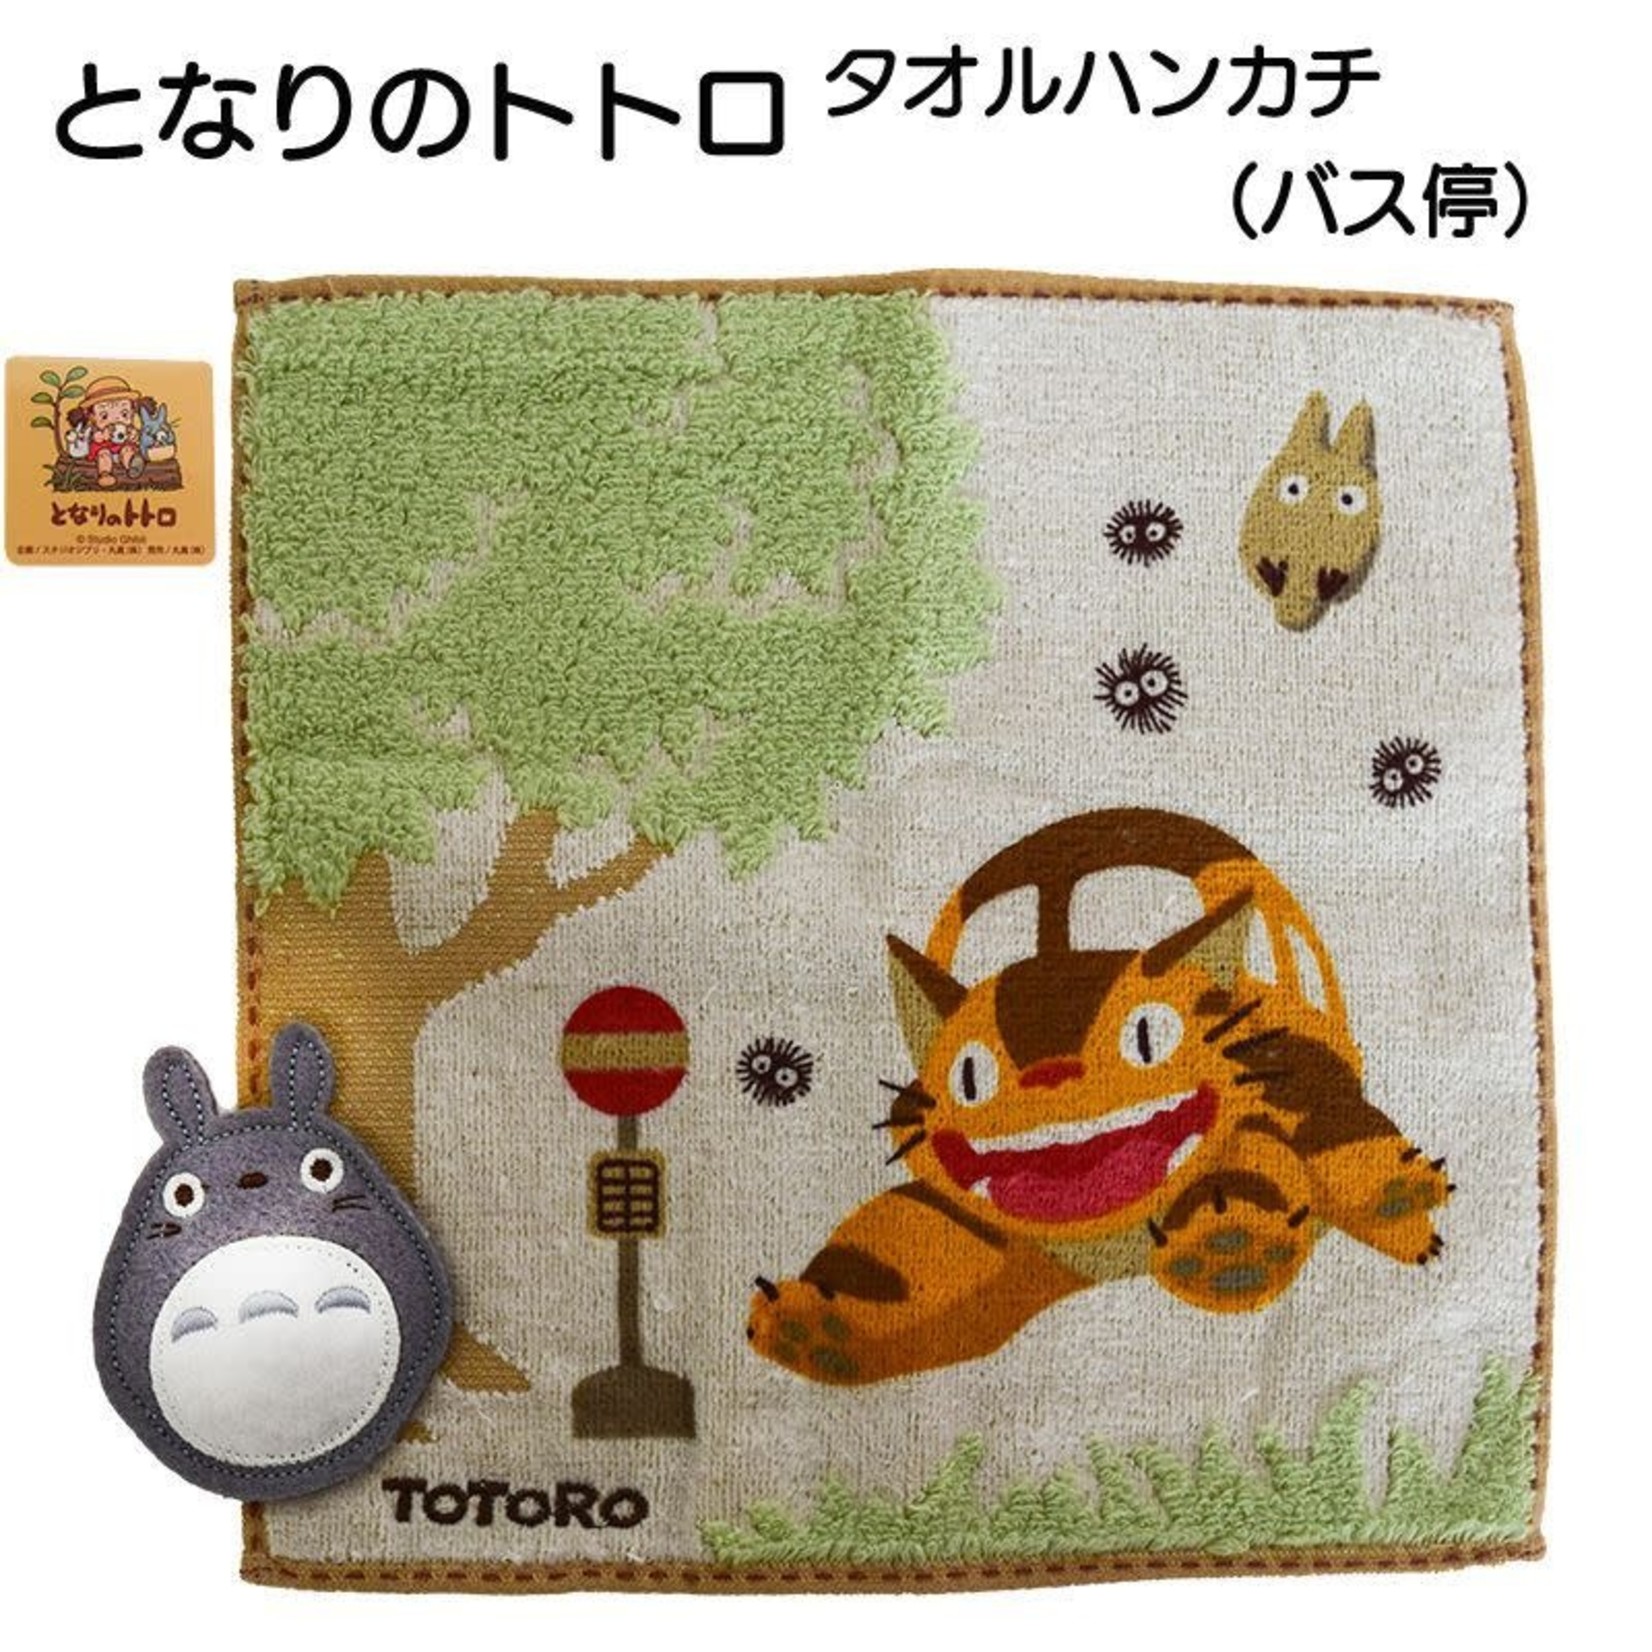 Marushin Totoro Washcloth "Bus Stop" - 0590040900